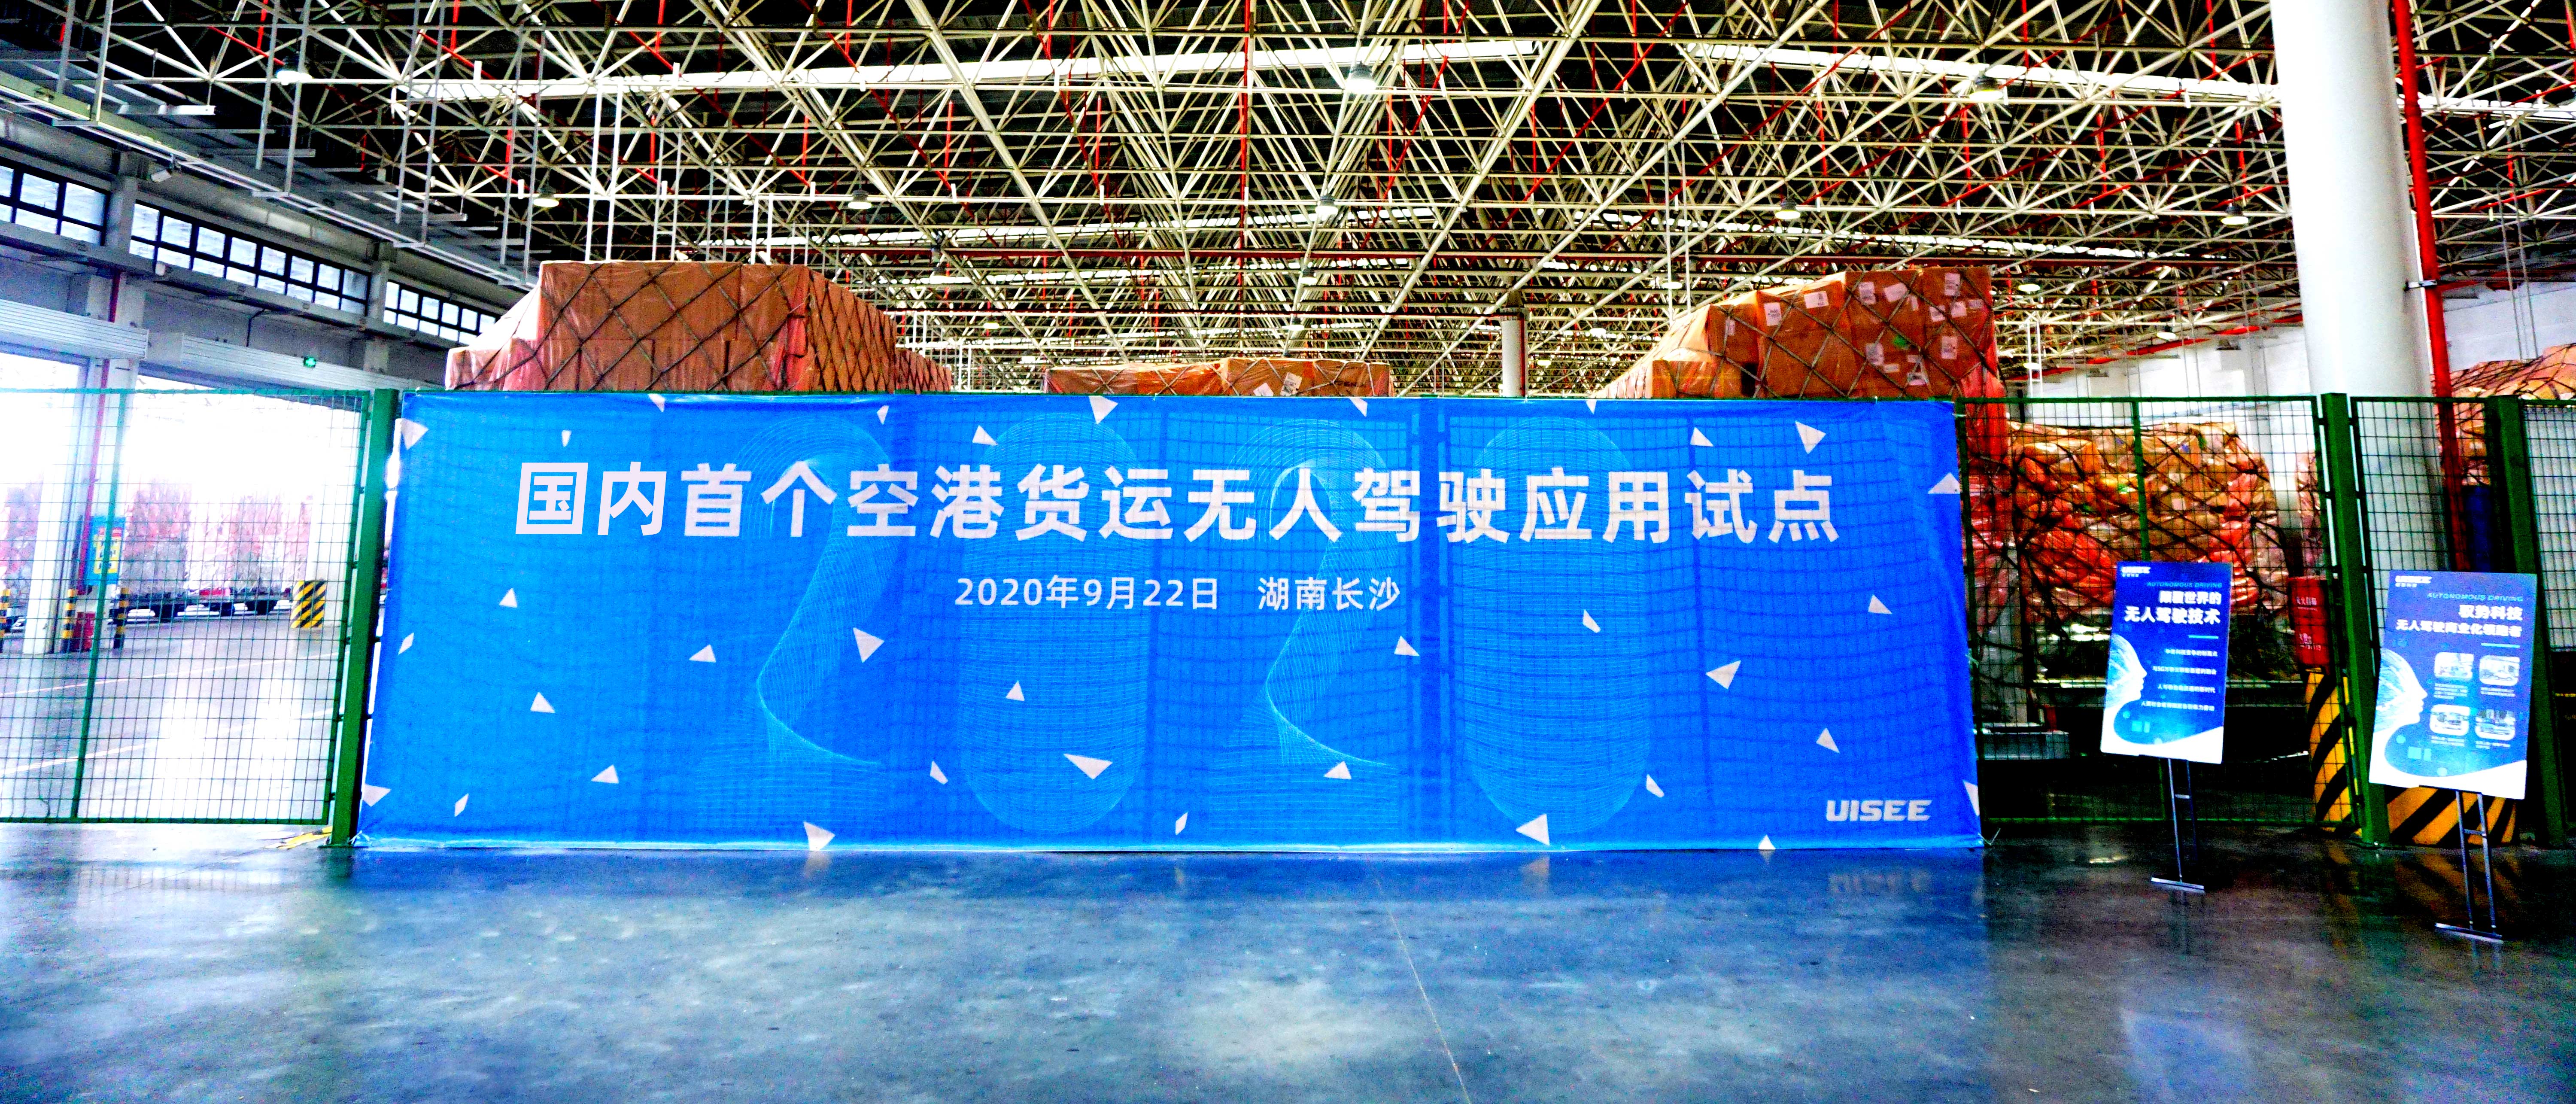 湖南机场携手驭势科技落地国内首个空港货运无人驾驶物流车